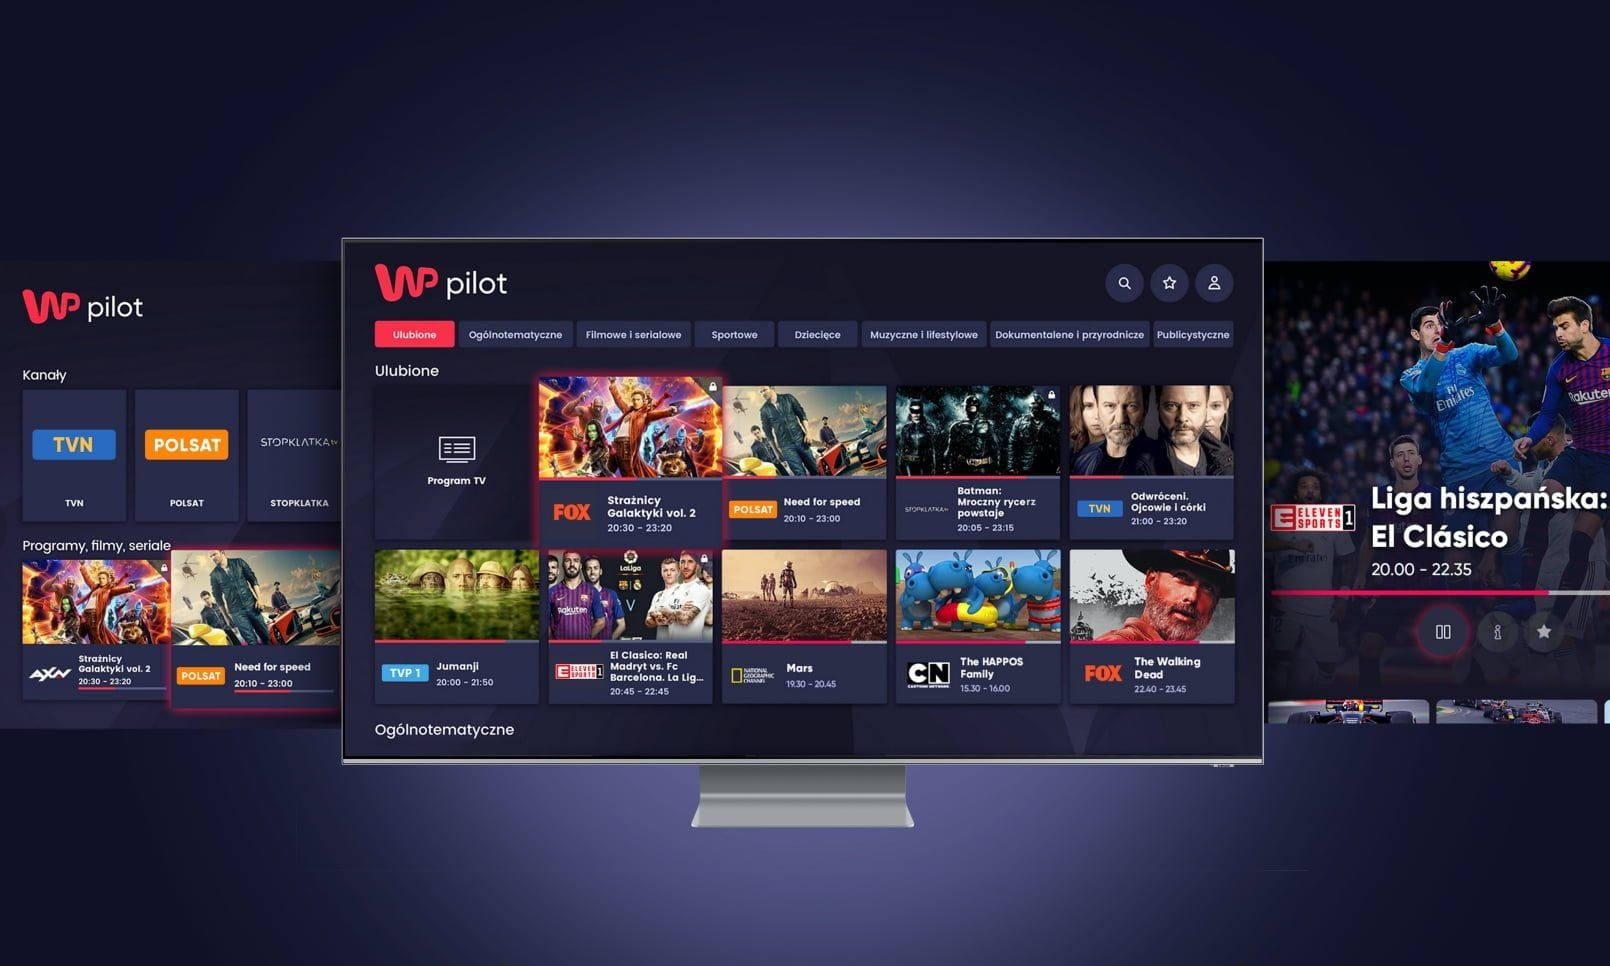 Interfejs użytkownika aplikacji WP Pilot na ekranie telewizora z widokiem menu głównego i różnymi kanałami TV oraz grafikami programów, takimi jak filmy i seriale.